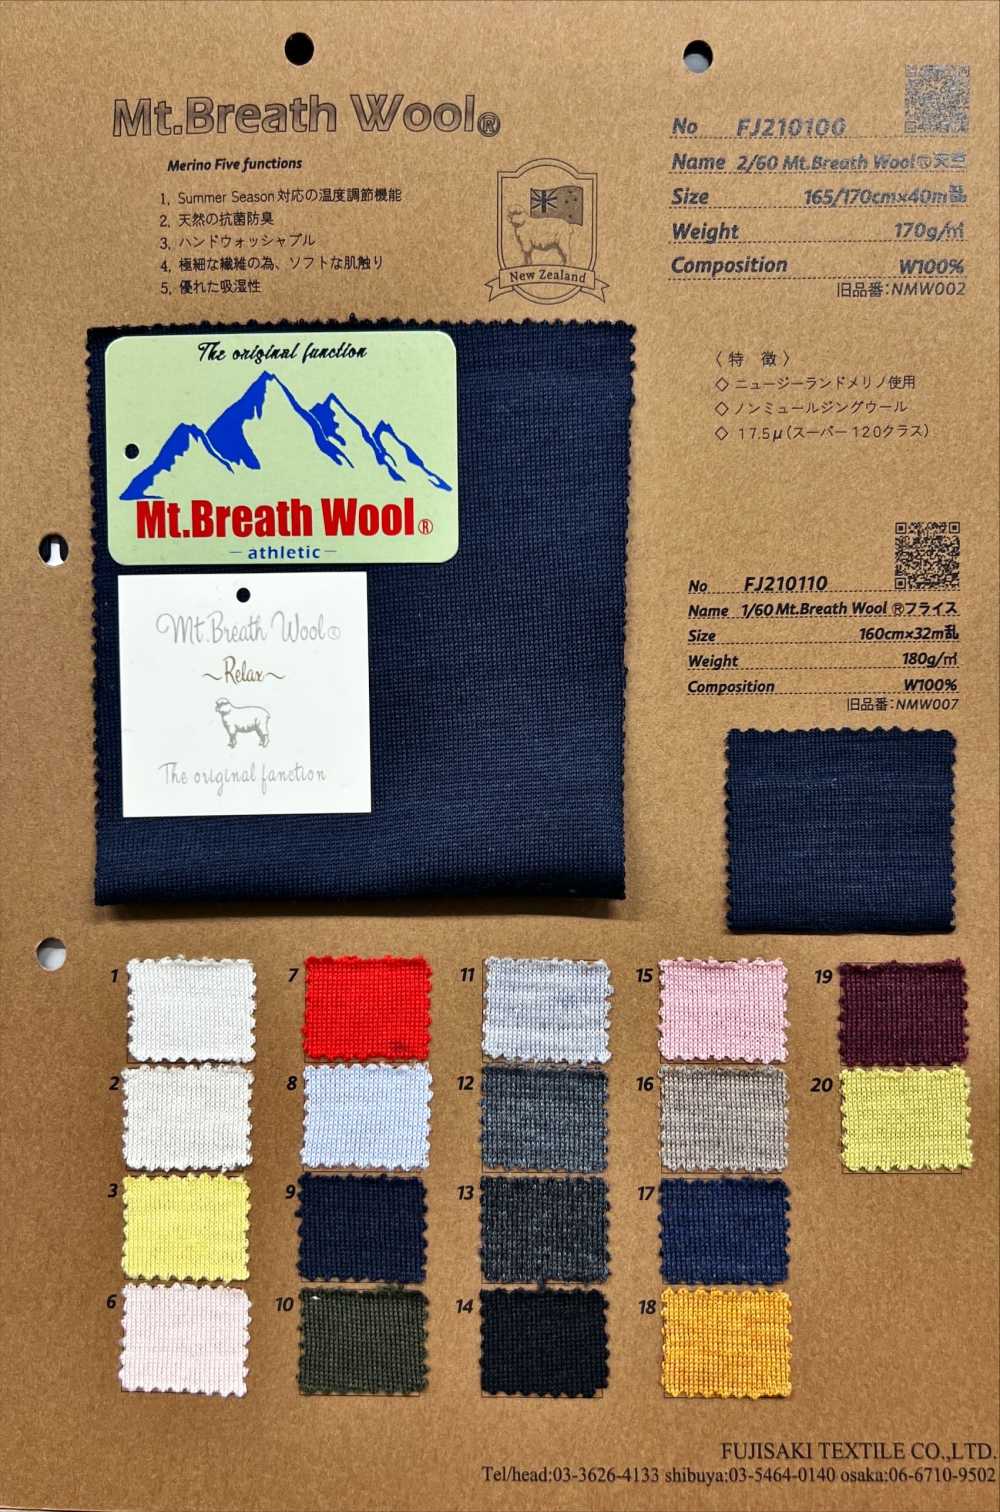 FJ210100 2/60 Mt.Breath Wolljersey[Textilgewebe] Fujisaki Textile